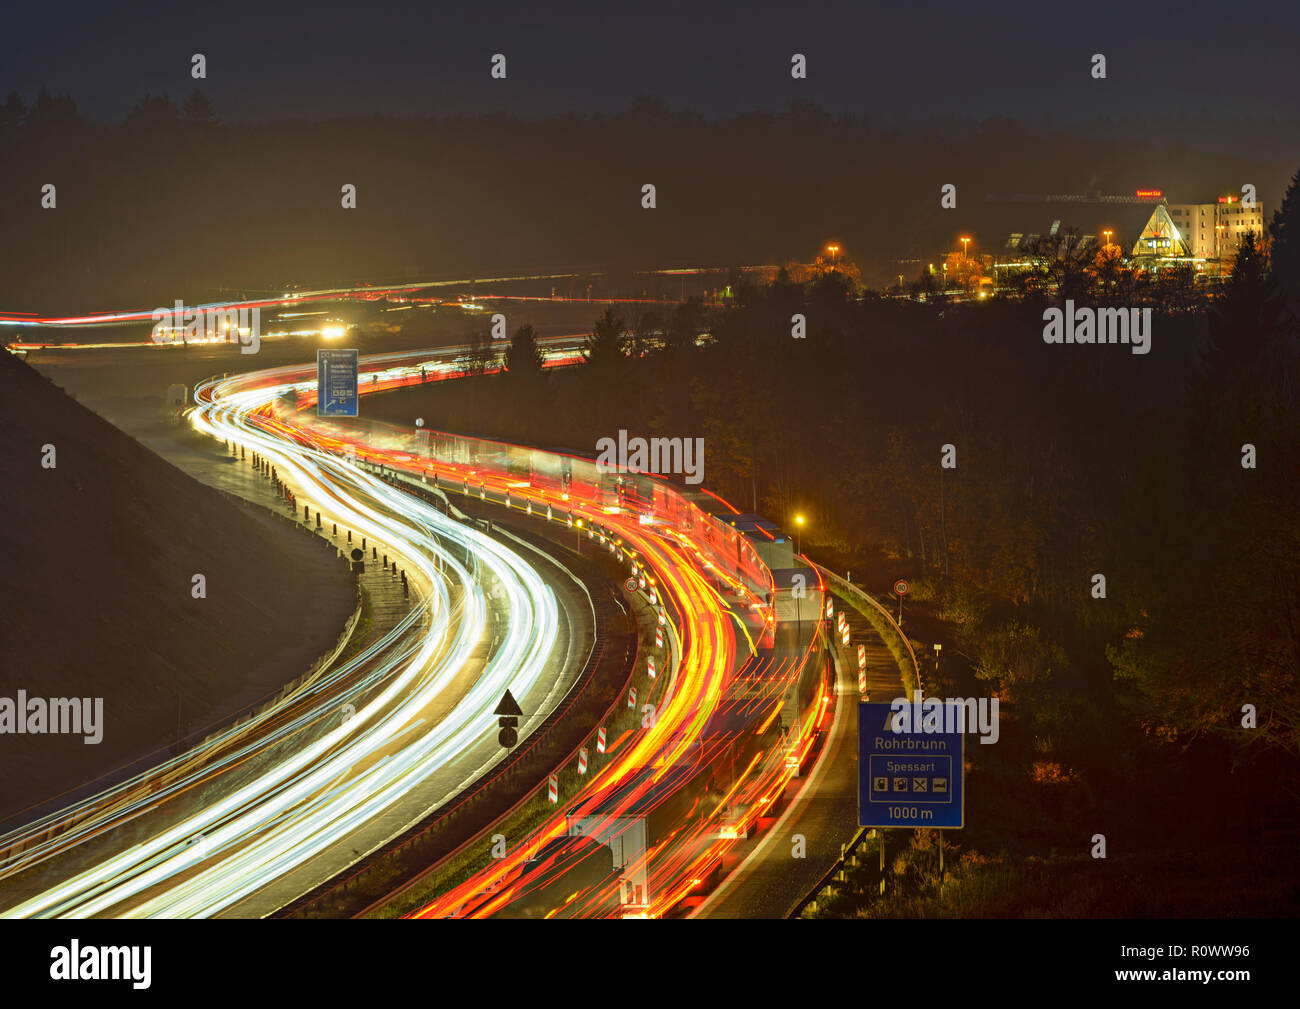 Autobahn A3 bei Rohrbrunn, Nachtaufnahme Stock Photo